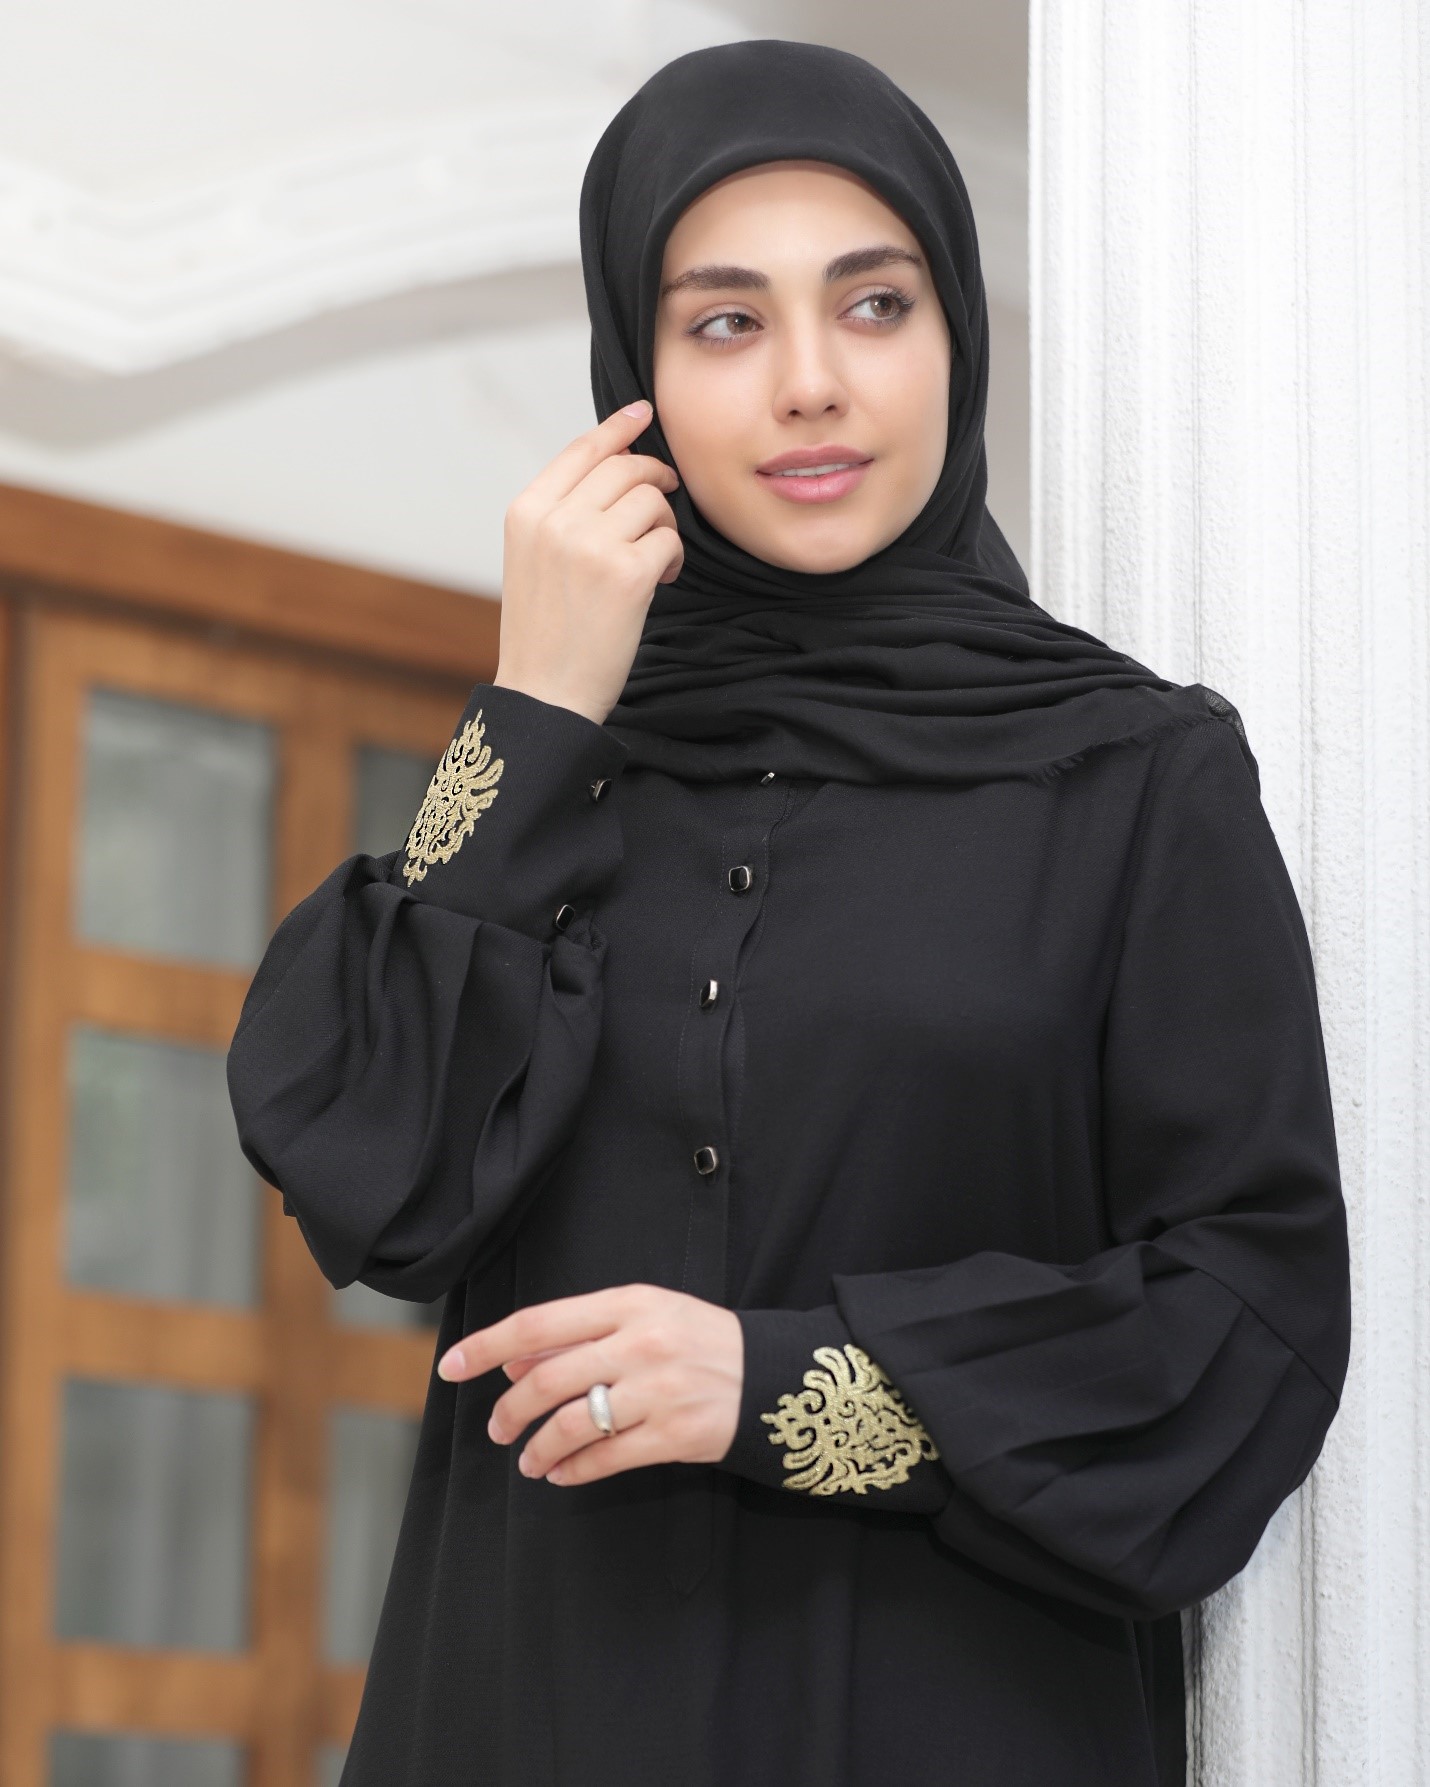 مدلینگ حجاب اسلامی